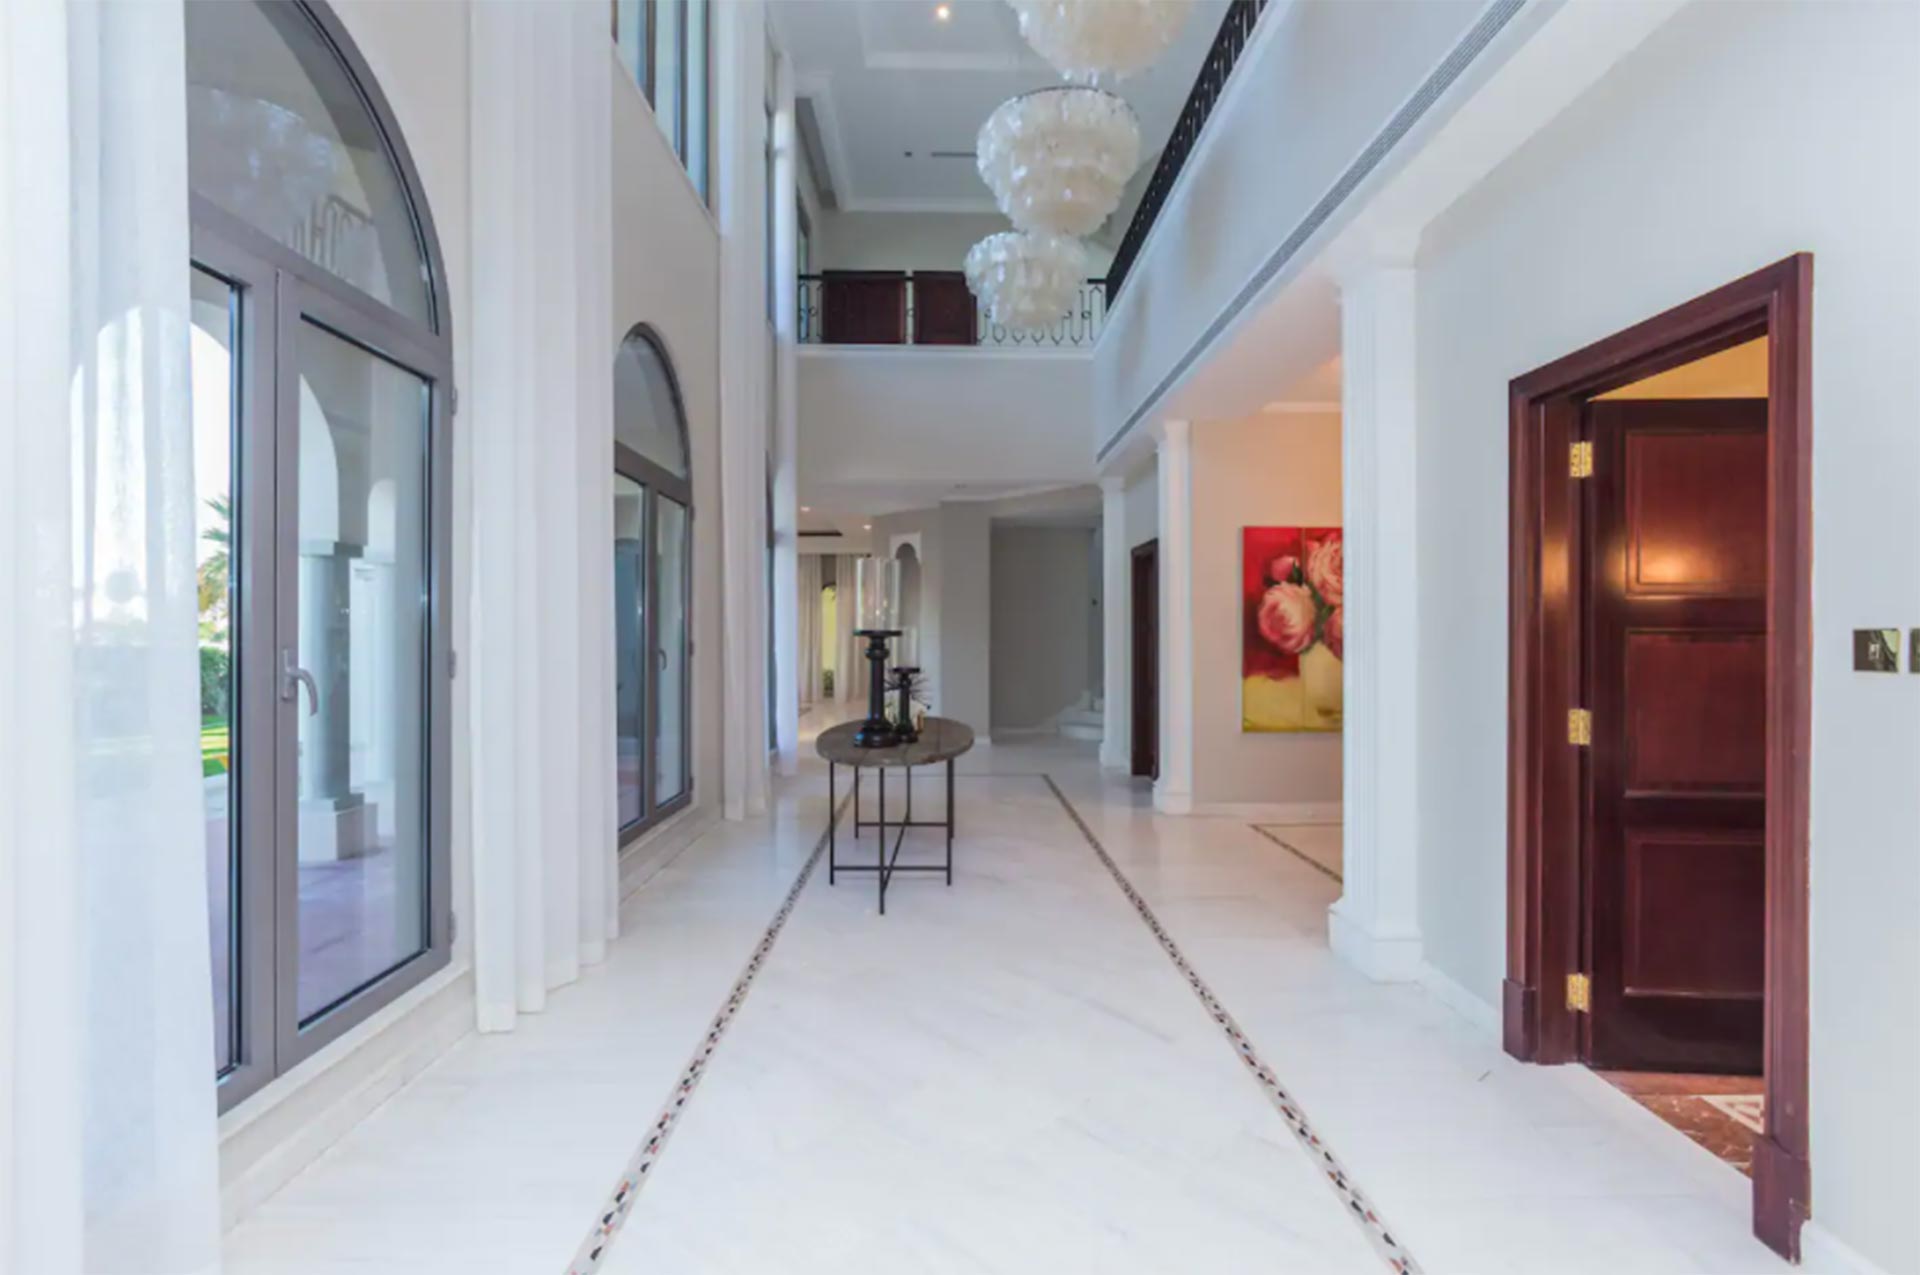 Los pasillos que conectan salones y habitaciones, con detalles de lujo, como los pisos (worldwidelux)